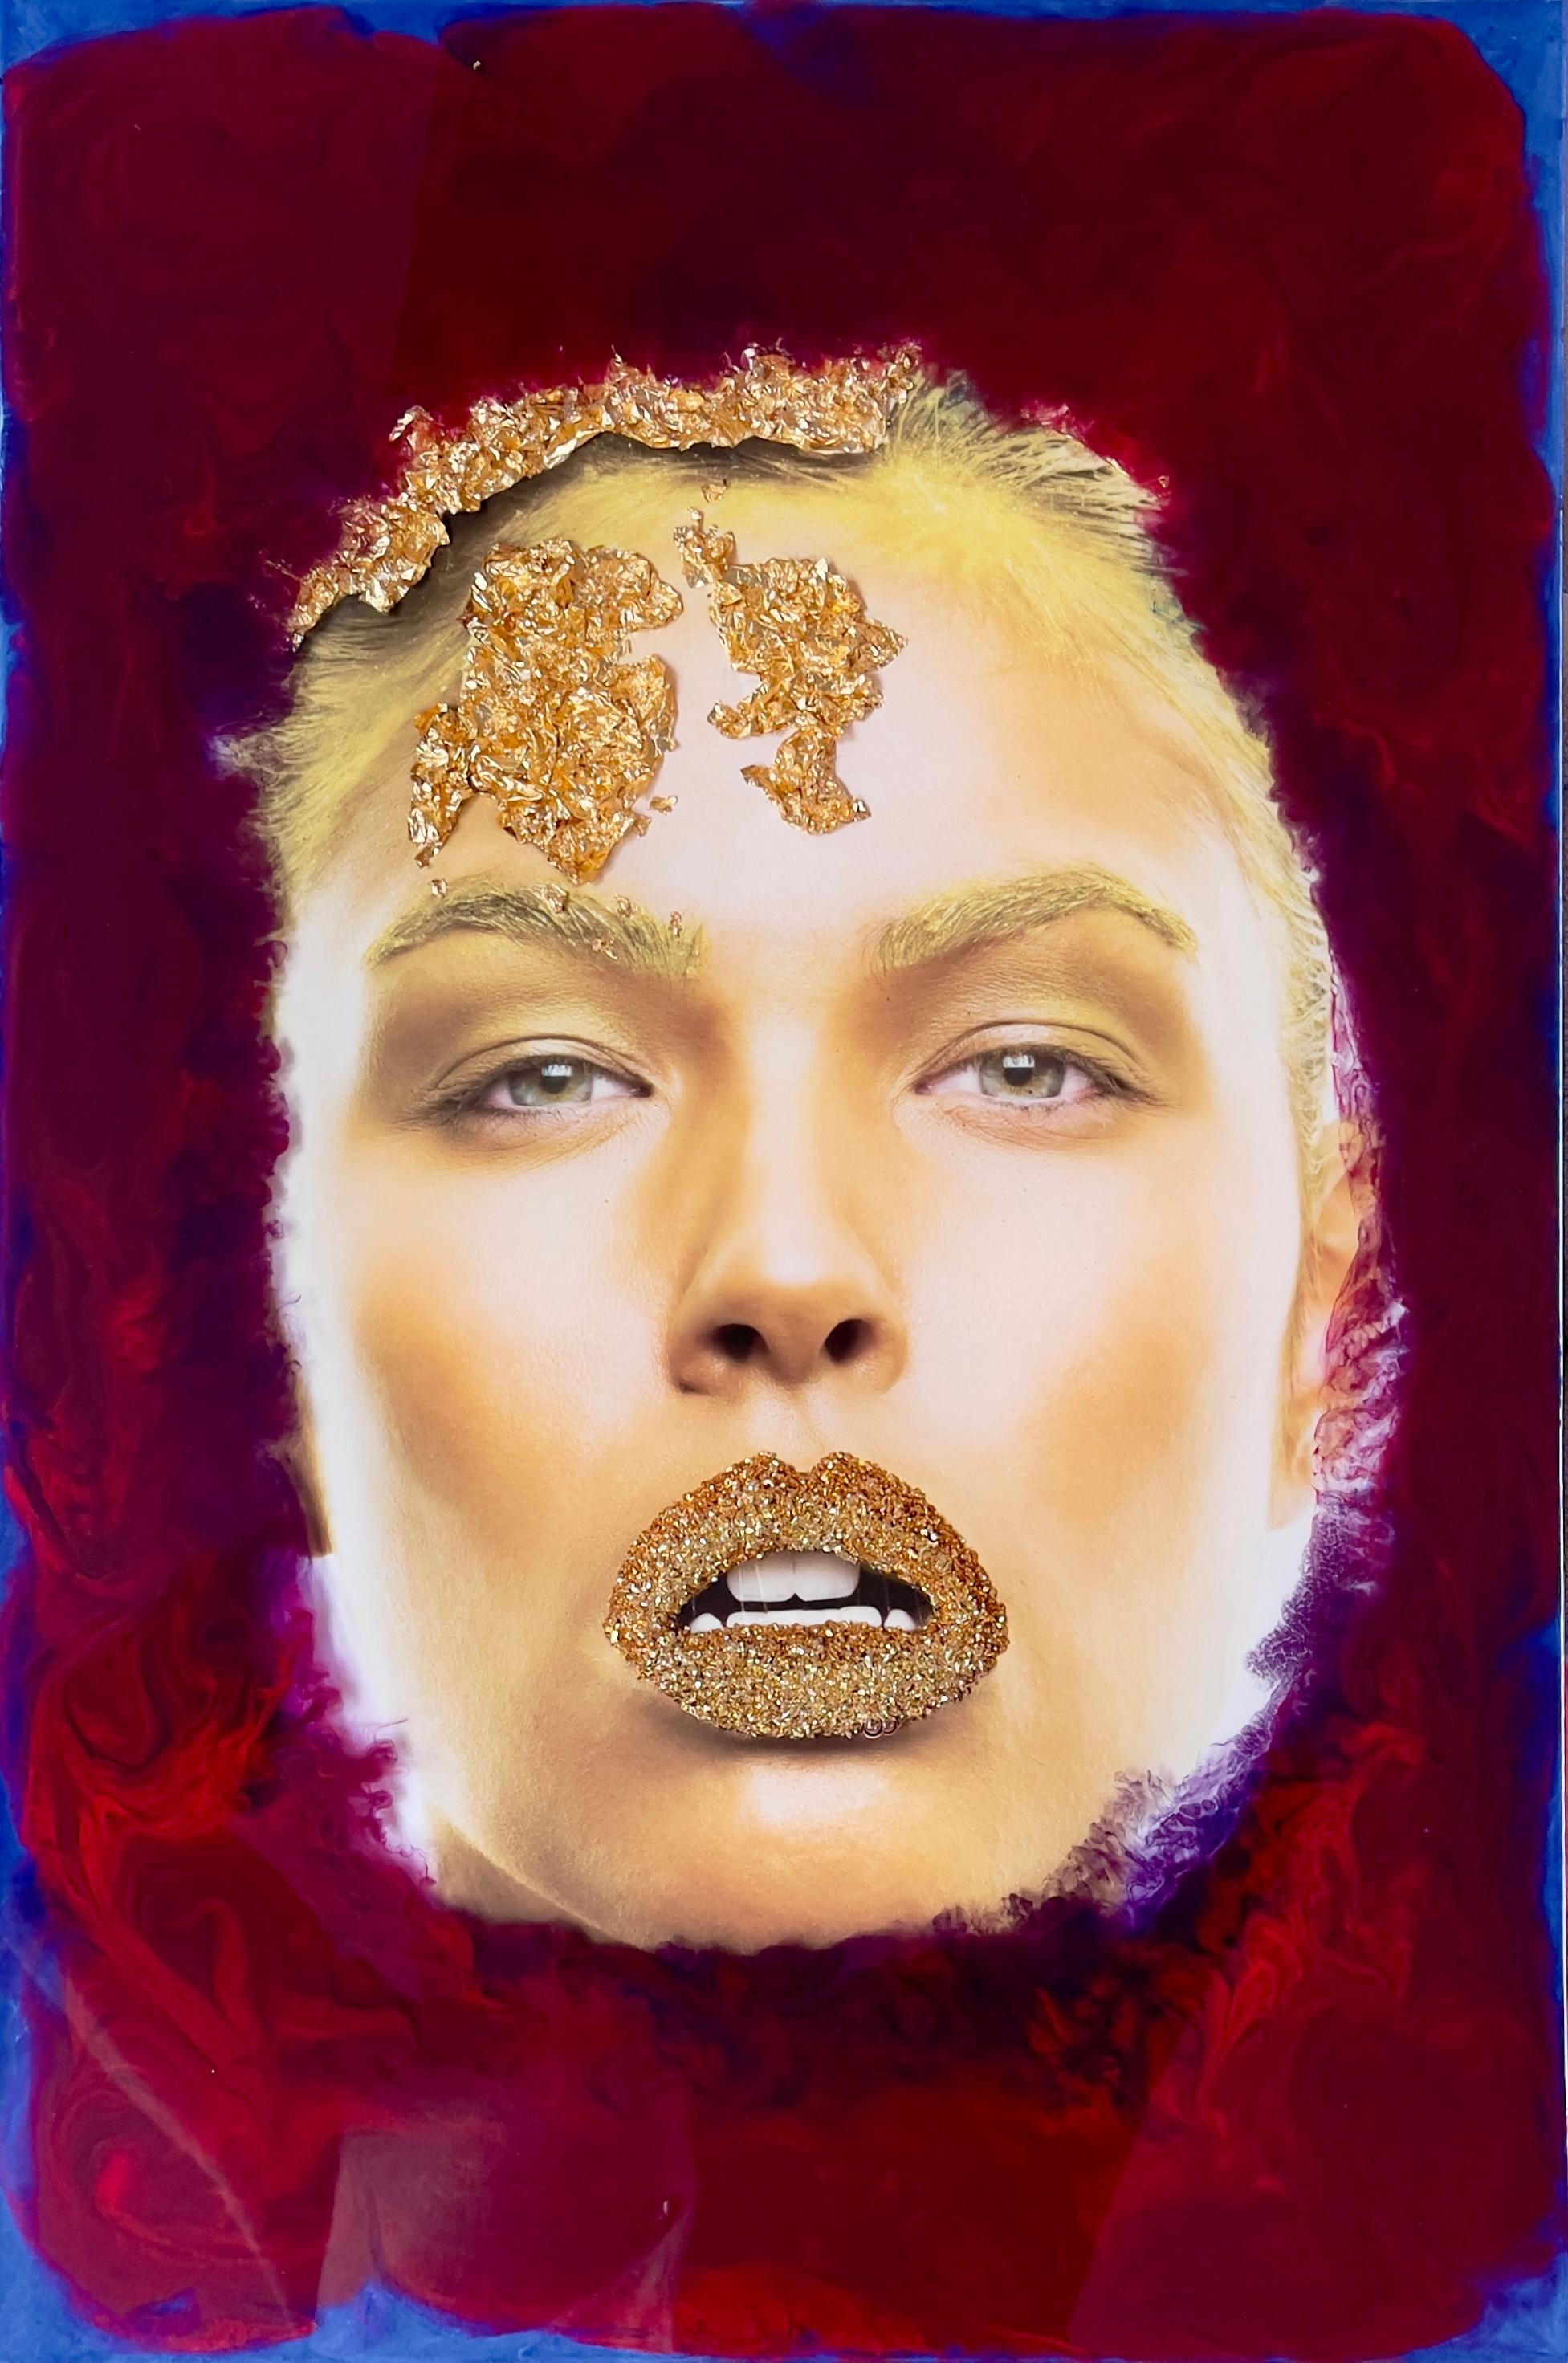 Gold Kiss 3D.  Mixed media portrait - Contemporary Mixed Media Art by Koray Erkaya